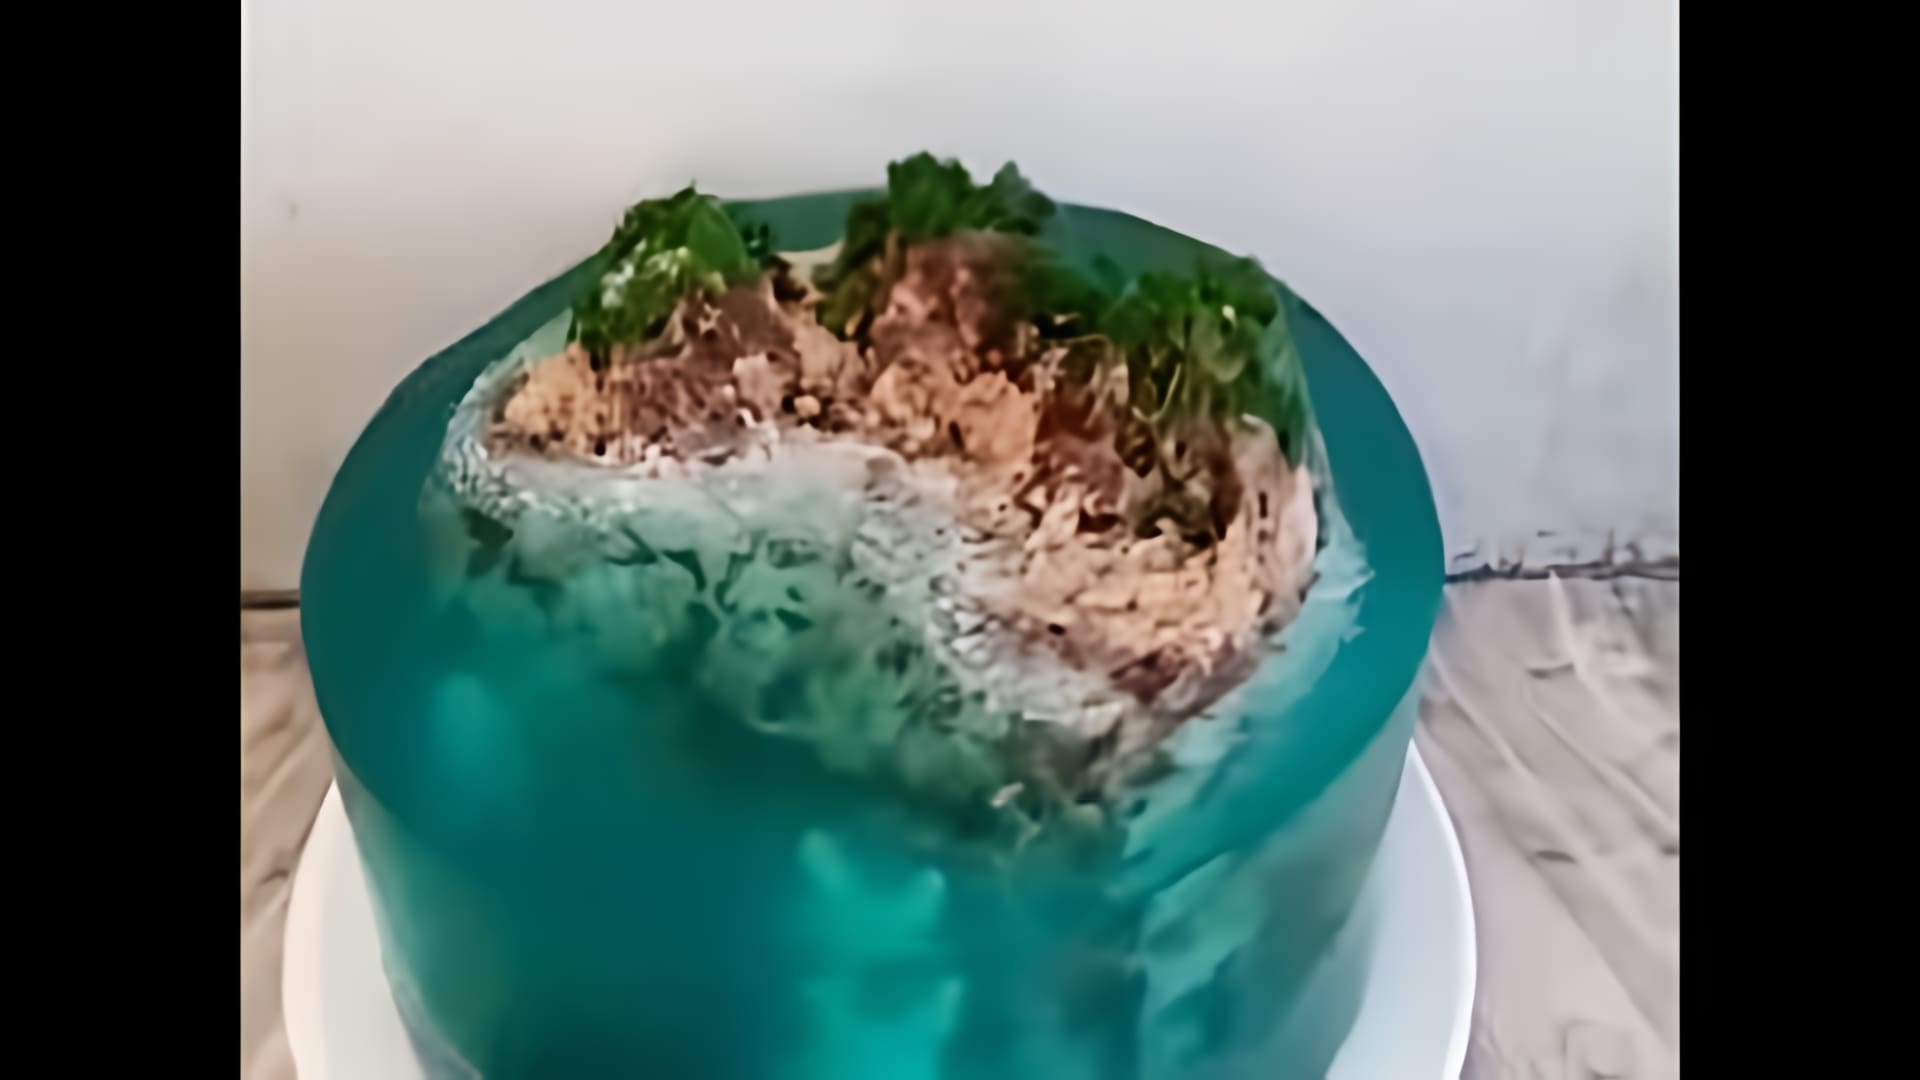 Видео-ролик с заголовком "Торт Остров с желе" представляет собой кулинарное шоу, в котором демонстрируется процесс приготовления оригинального десерта